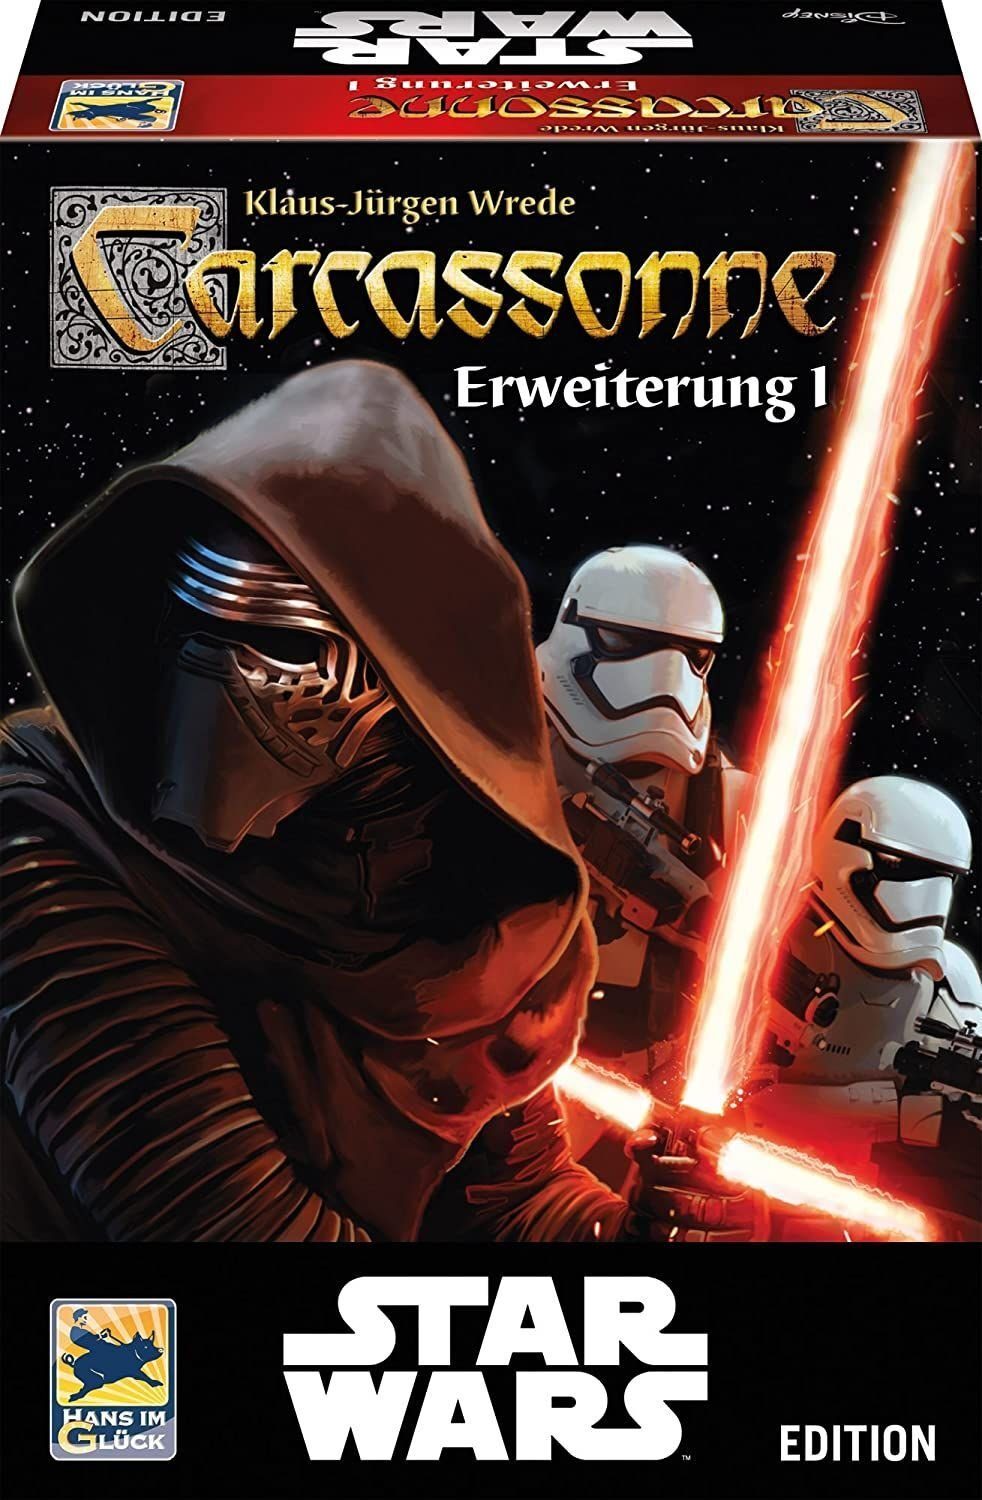 Hans im Glück Spiel, Carcassonne Star Wars Edition Erweiterung 1